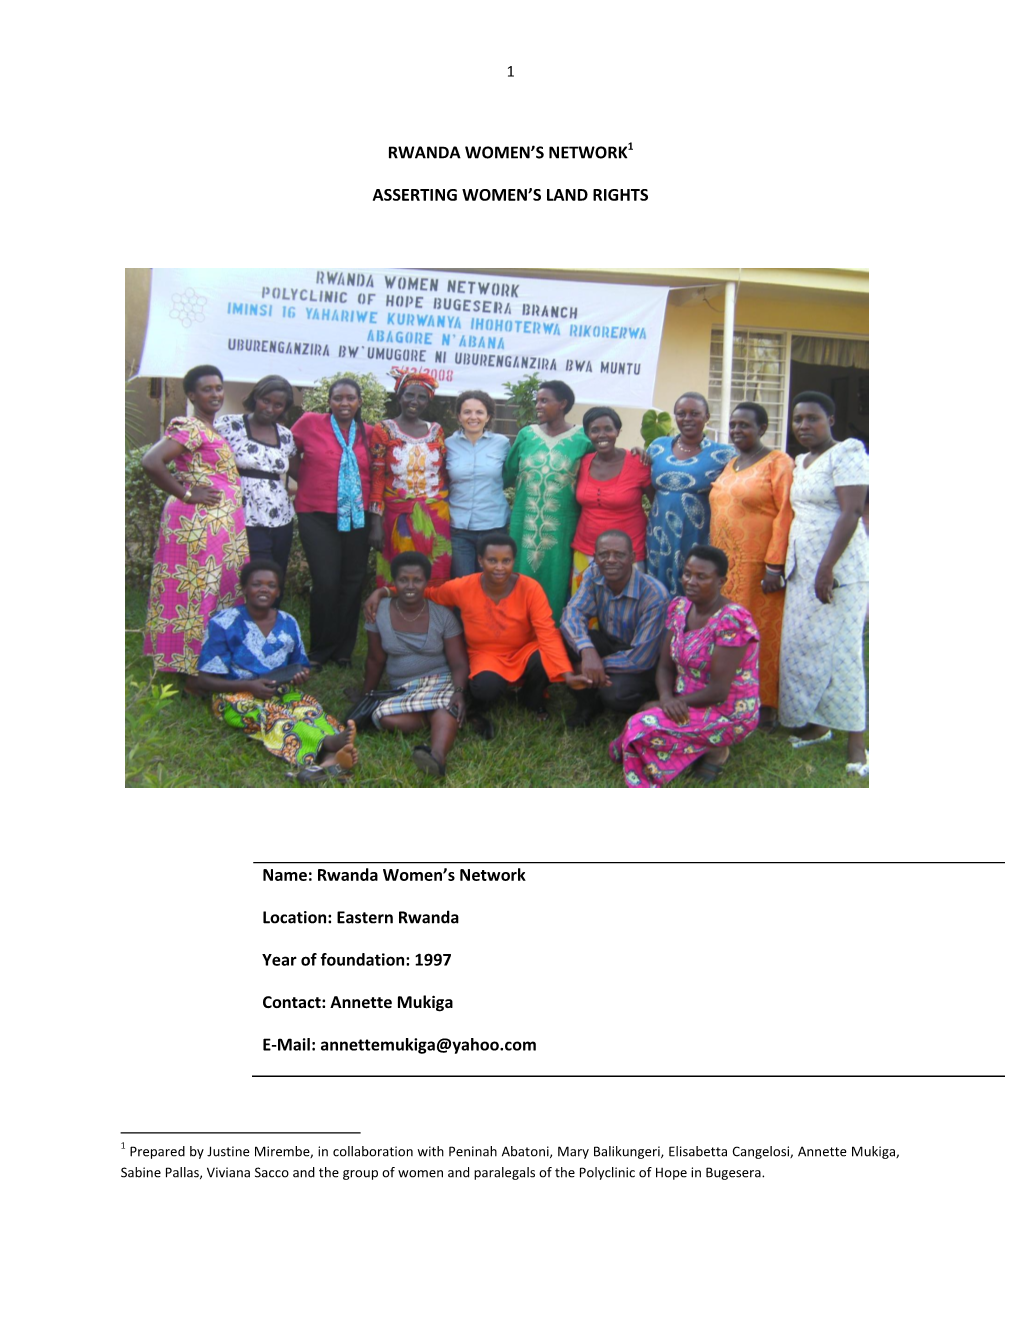 Rwanda Women's Network Location